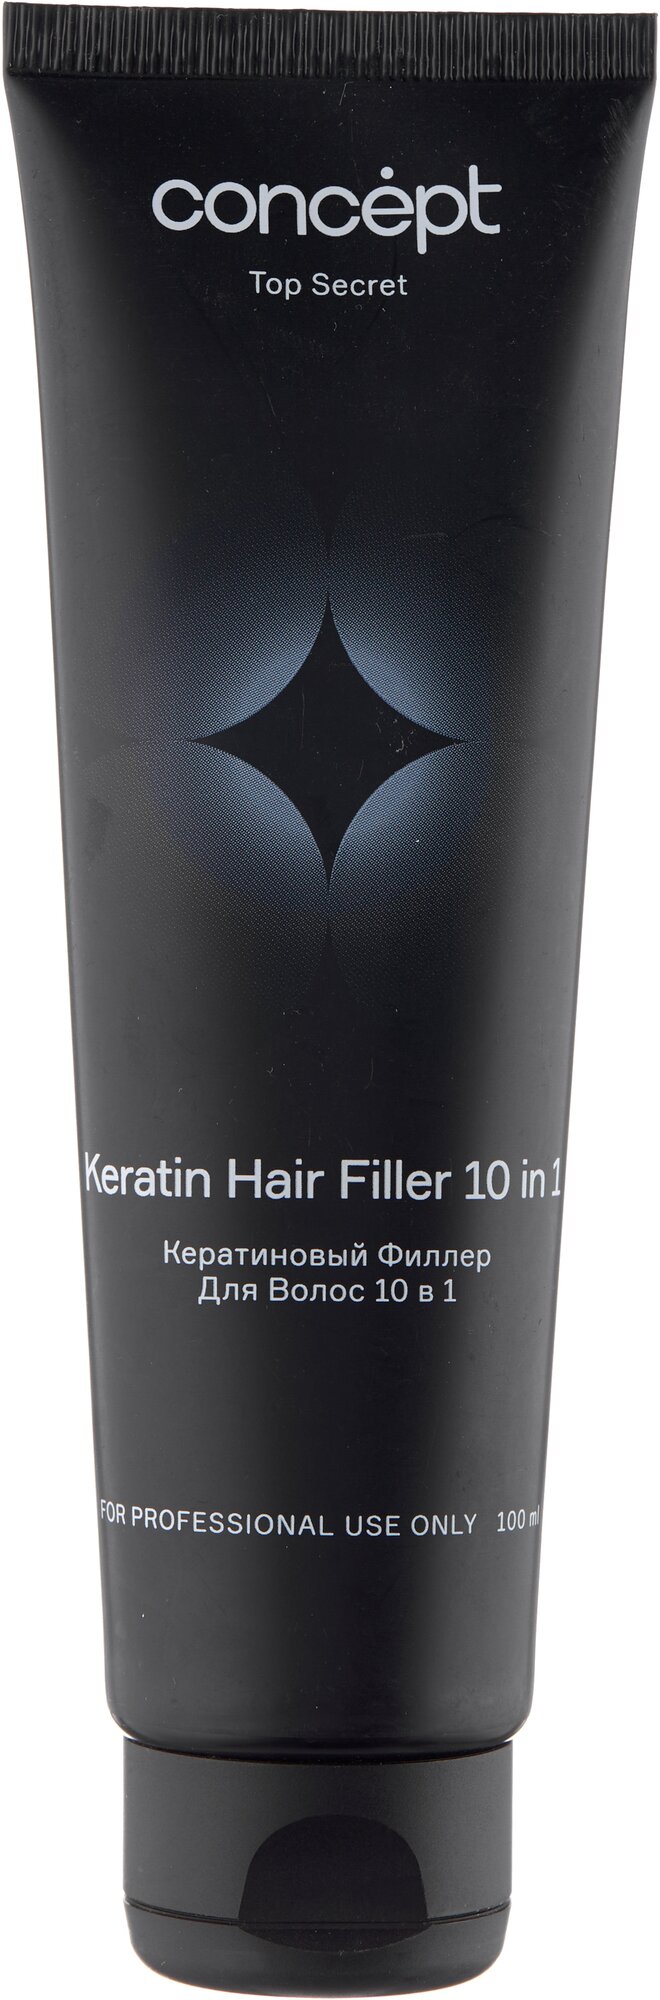 Concept Top Secret Кератиновый филлер для волос 10 в 1, 100 мл, туба